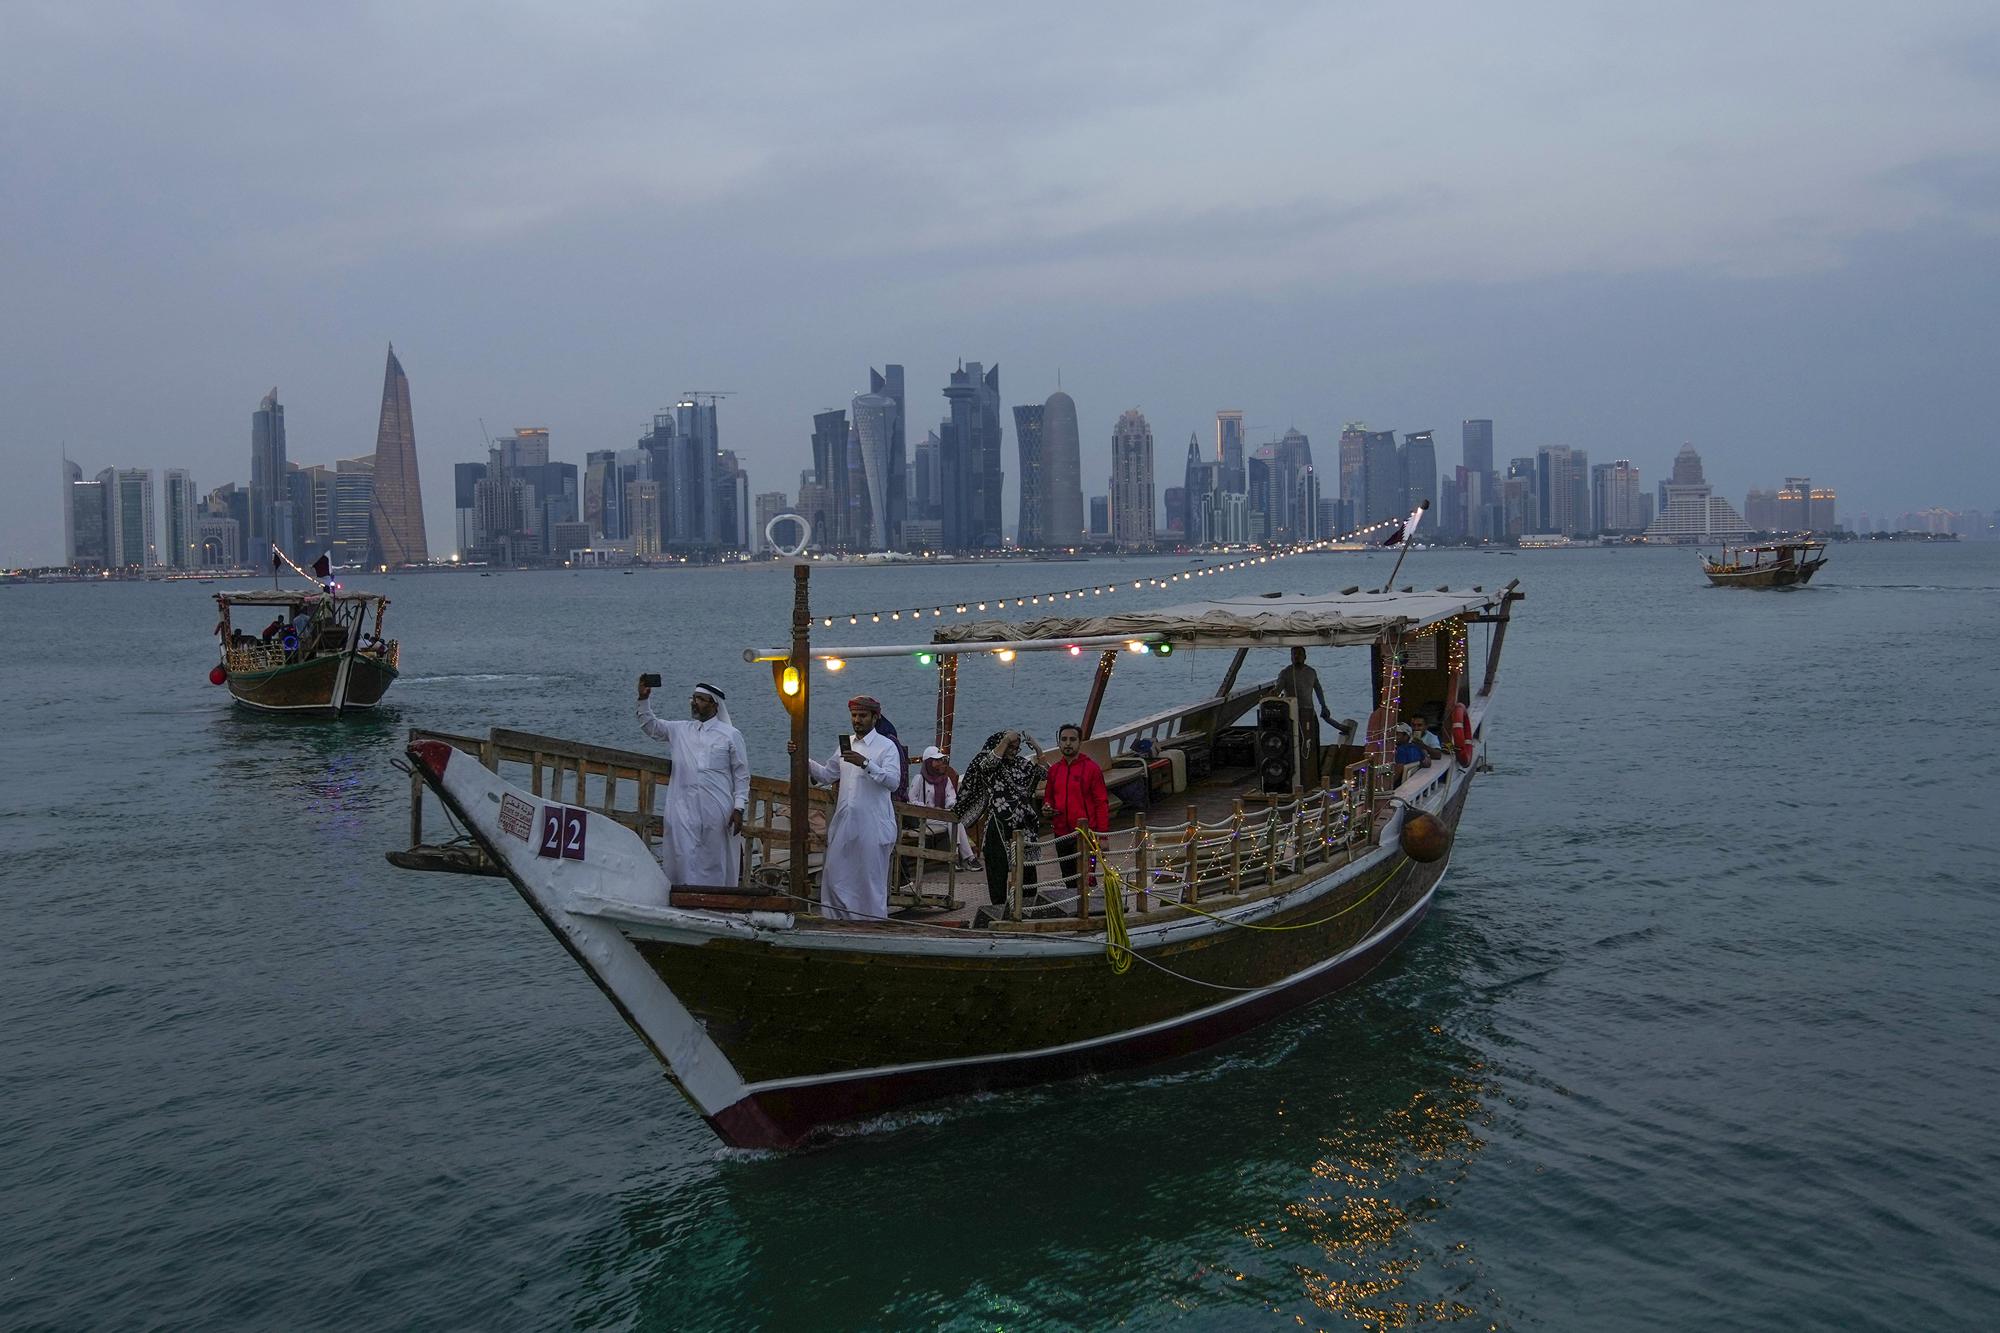 Du lịch Qatar mùa World Cup 2022: Những điểm đến không thể bỏ lỡ - Ảnh 4.